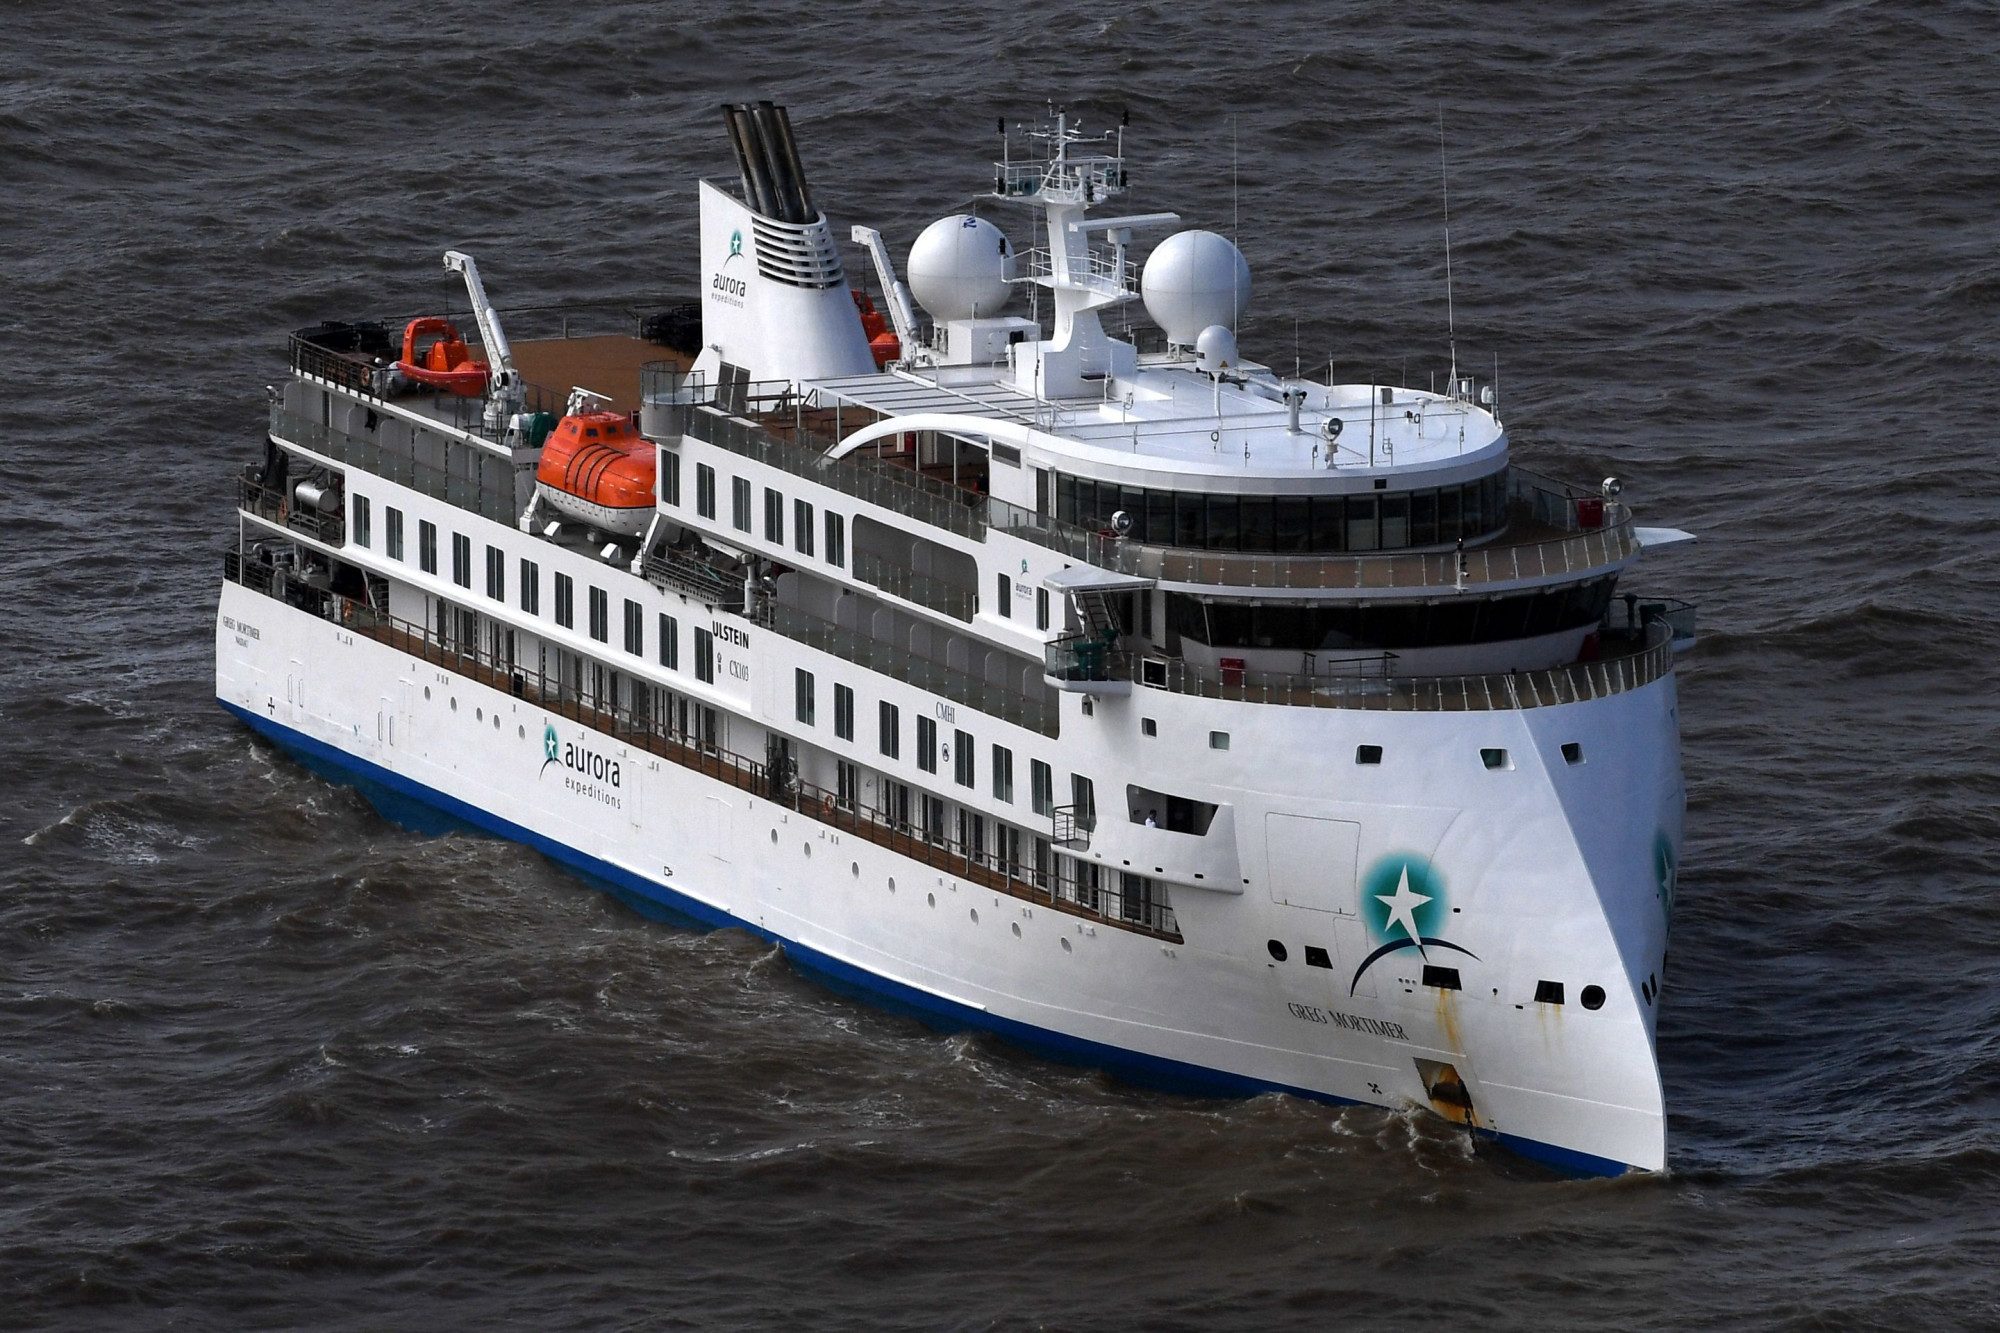 cruise-ship-greg-mortimer-8471673